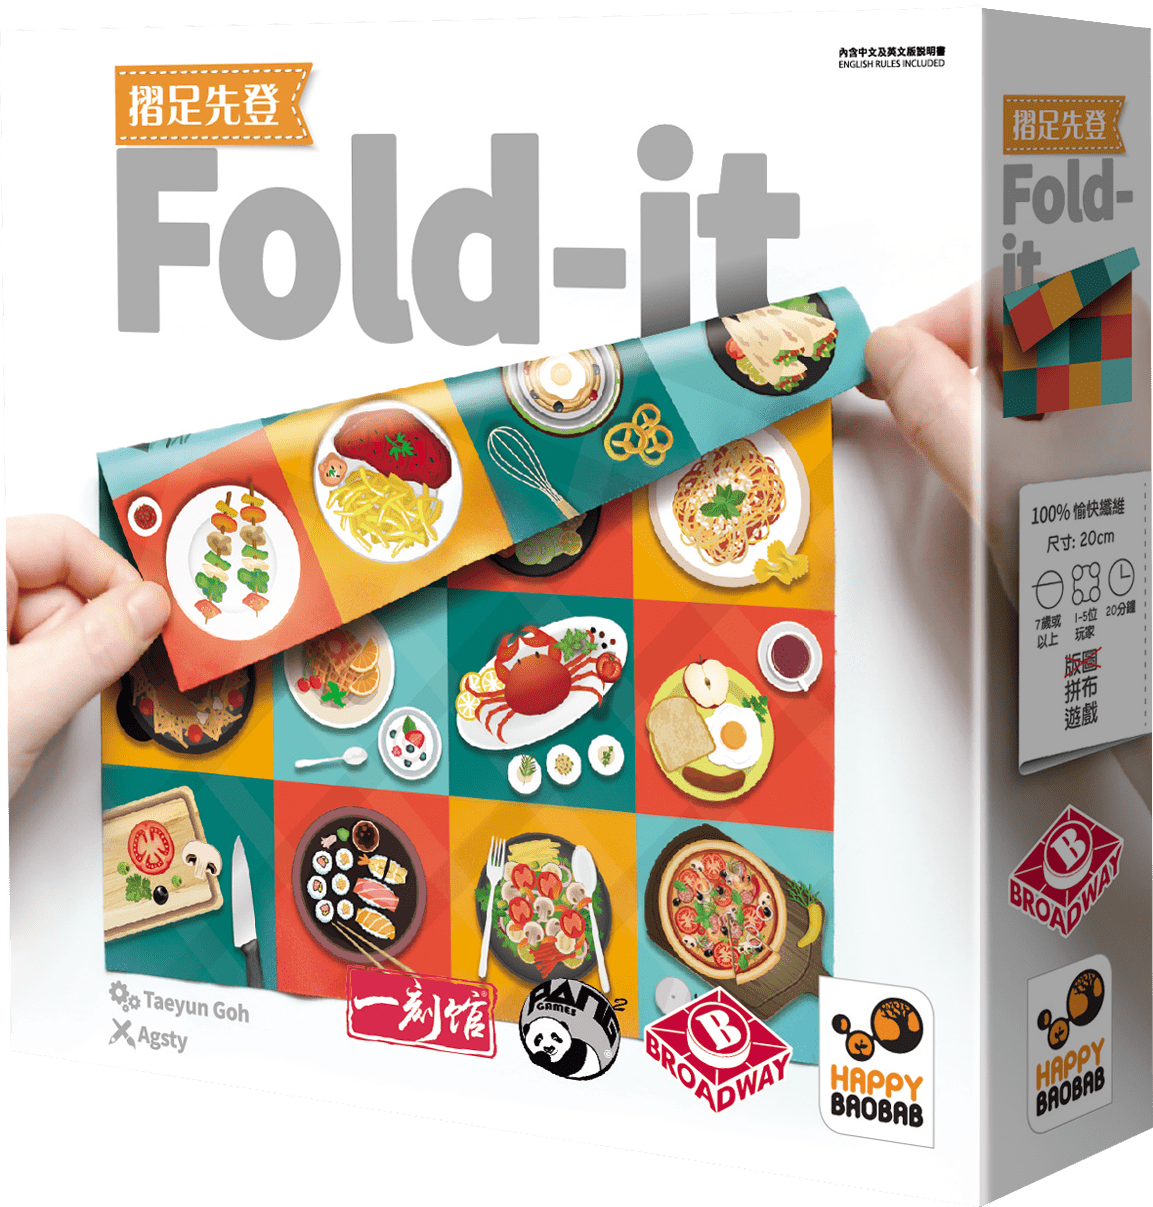 摺足先登 Fold-it / Fold-it